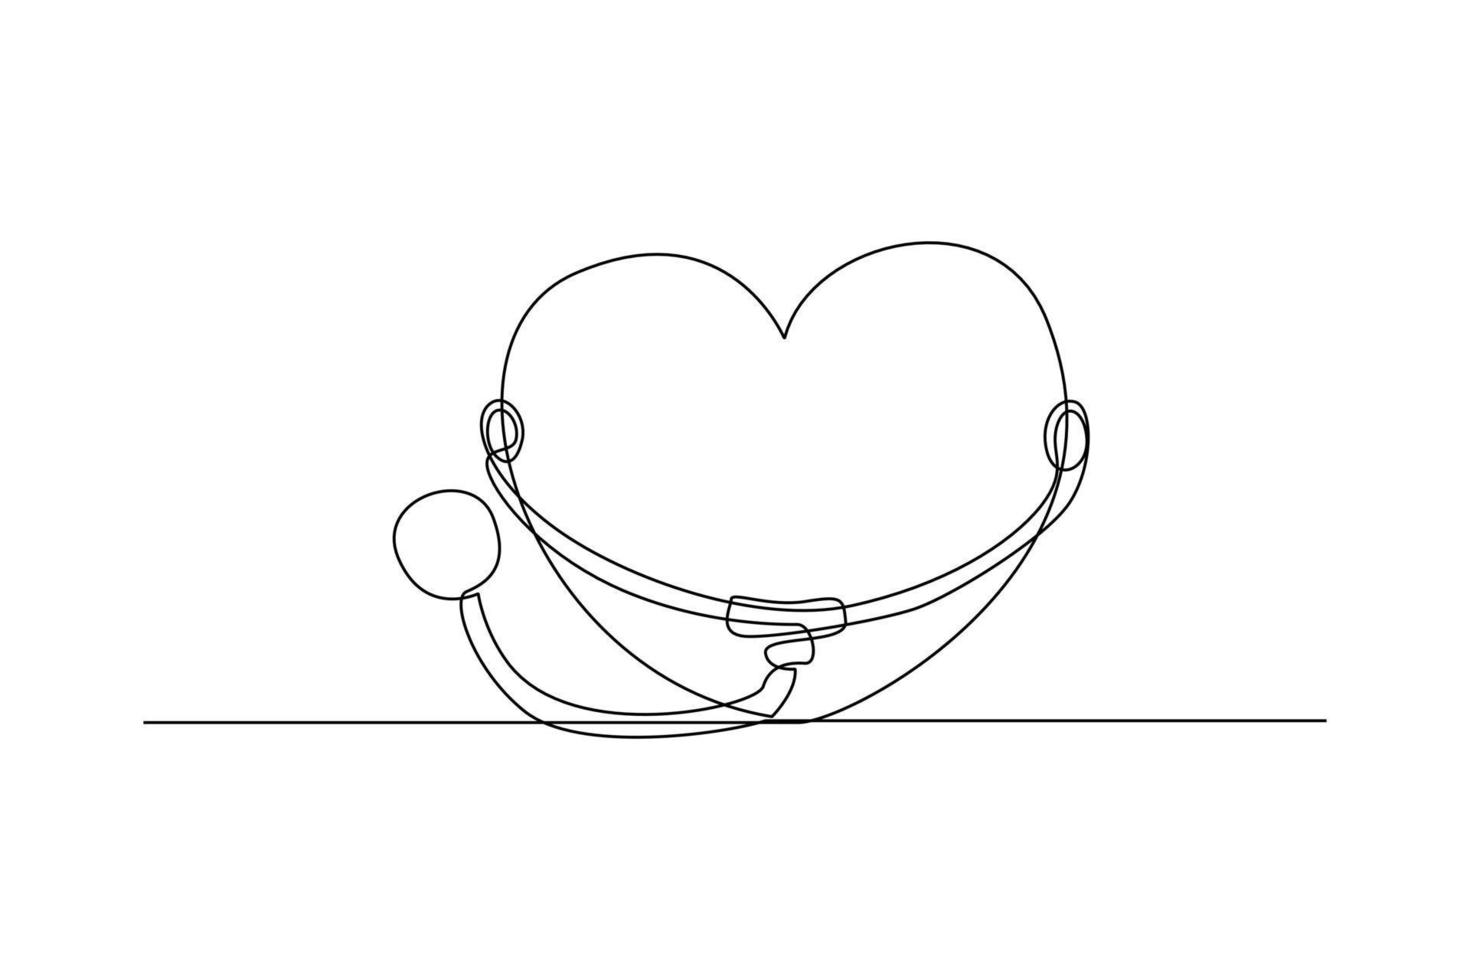 doorlopend een lijn tekening stethoscoop en hart. wereld hypertensie dag concept. single lijn trek ontwerp vector grafisch illustratie.